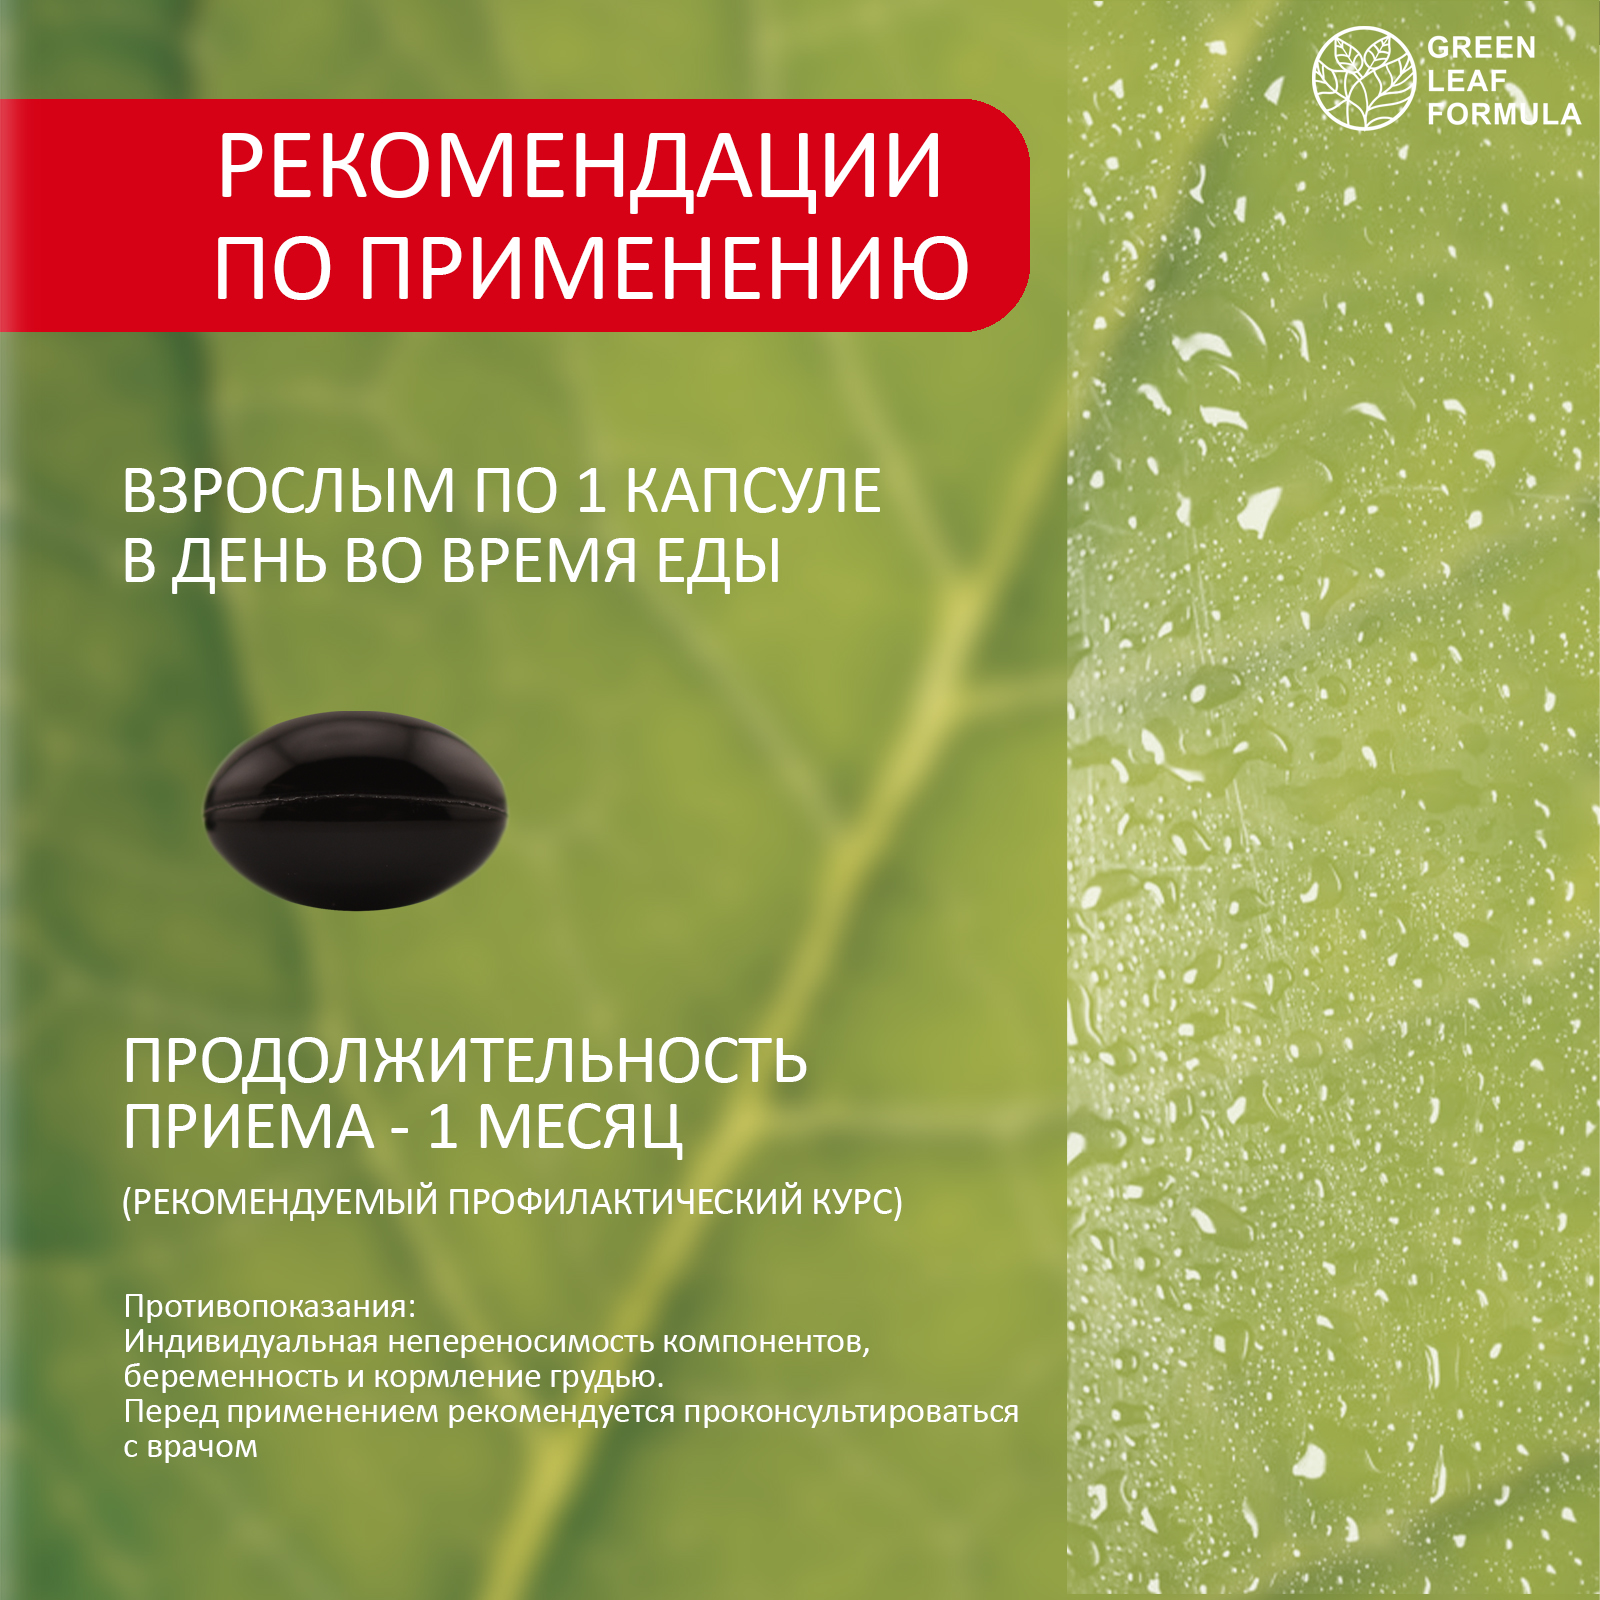 Лютеин комплекс для зрения Green Leaf Formula витамины для глаз с лютеином и черникой 3 банки - фото 8